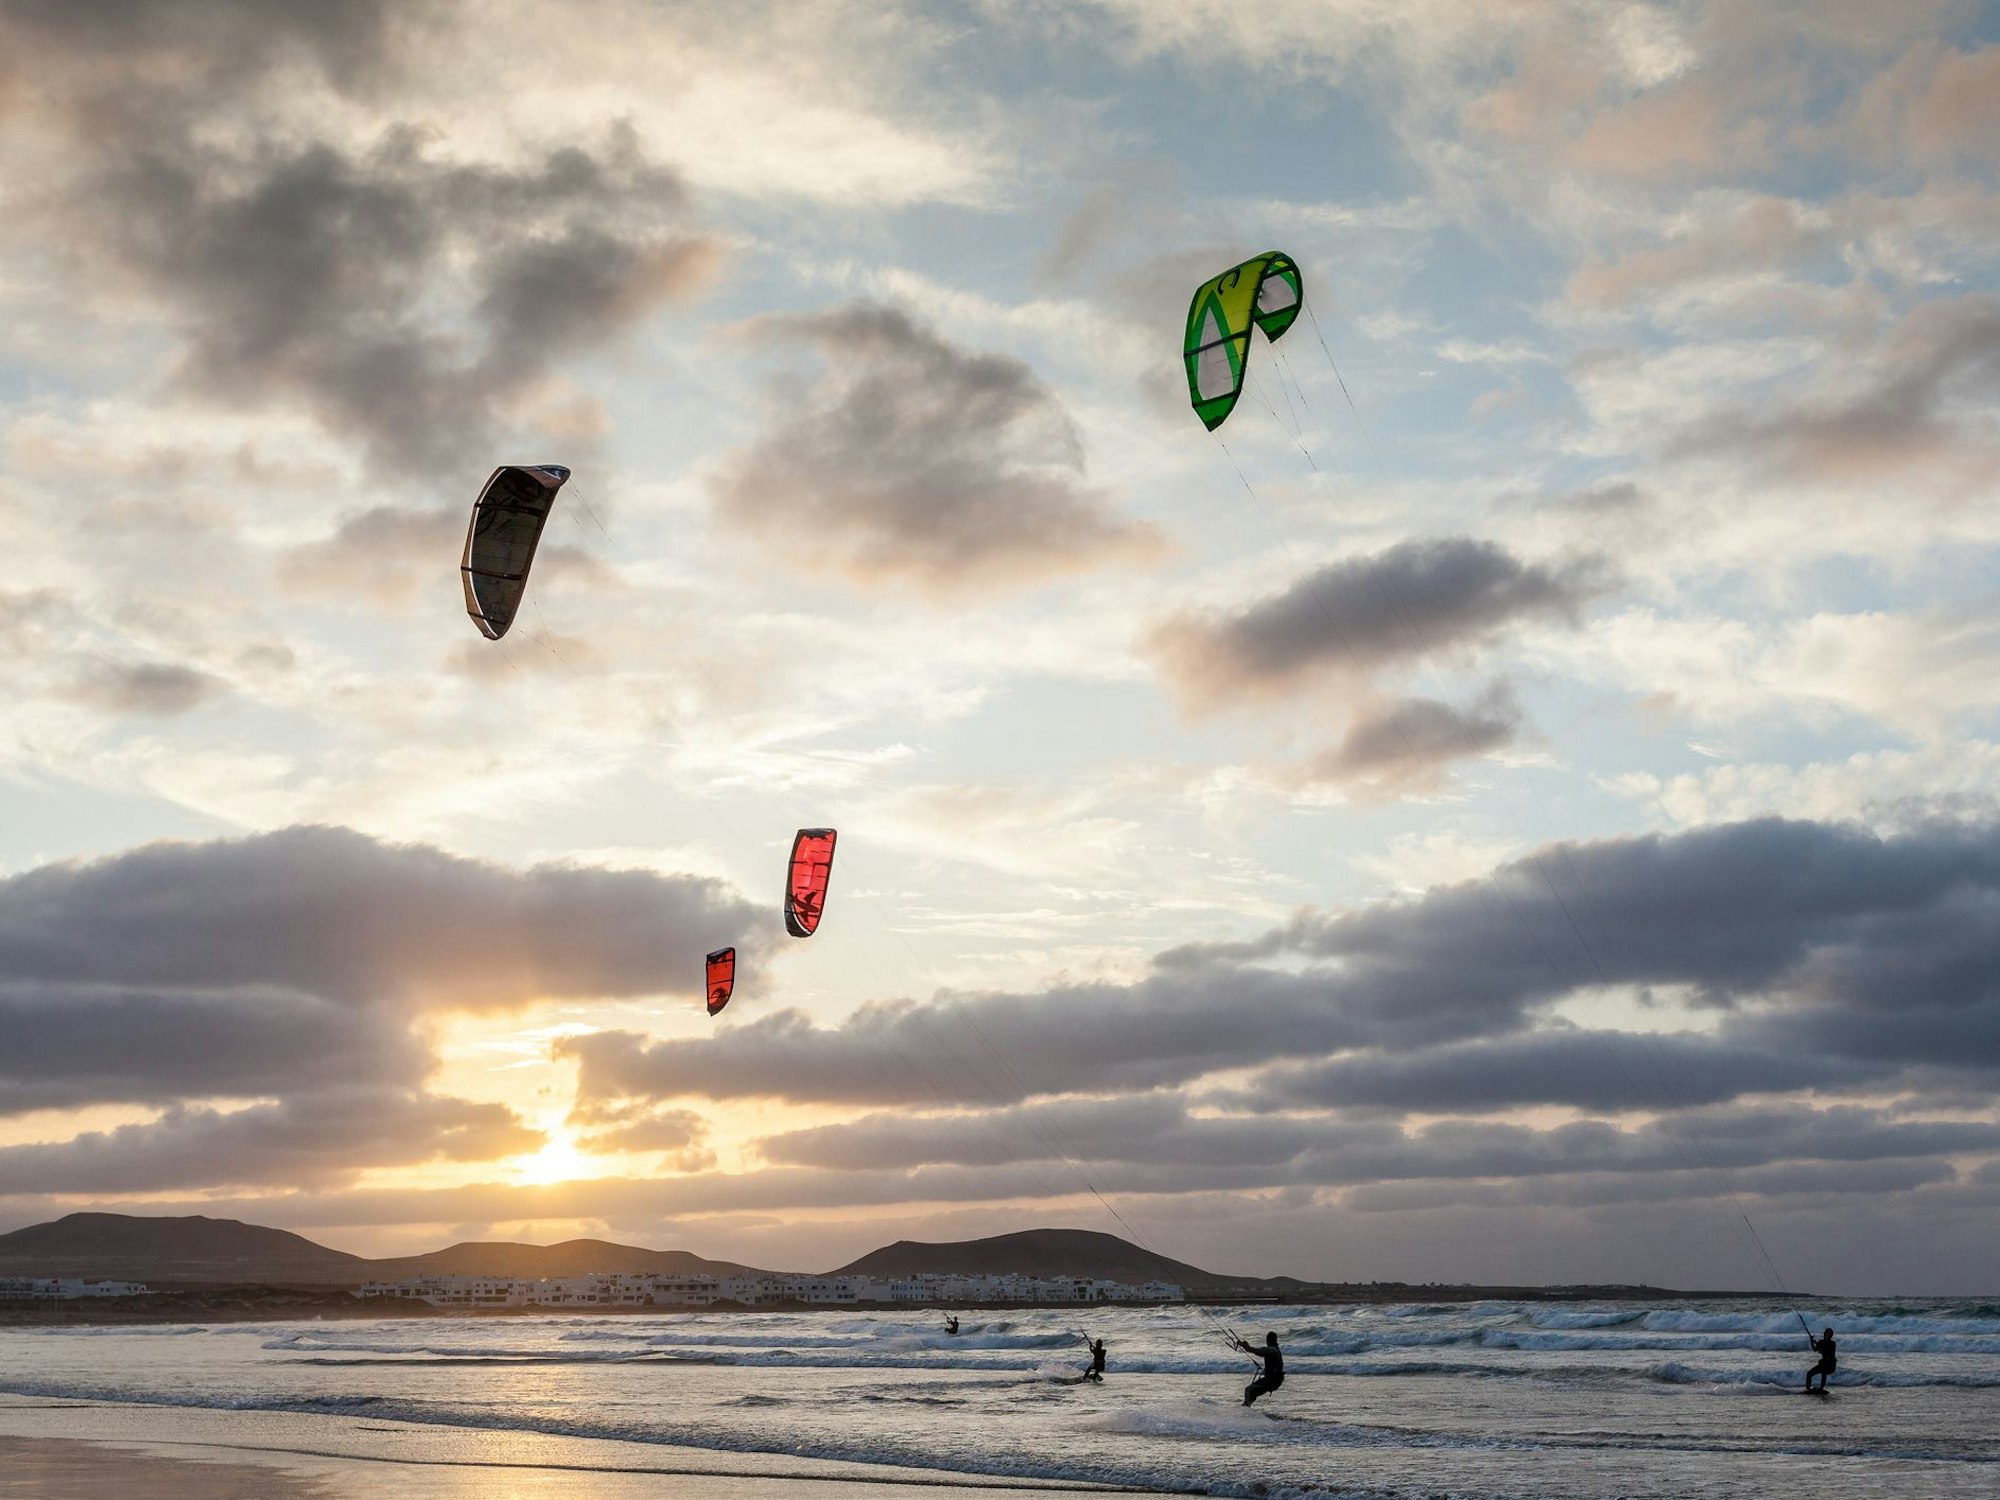 Kitesurfer surfen bei Sonnenuntergang auf dem Meer.